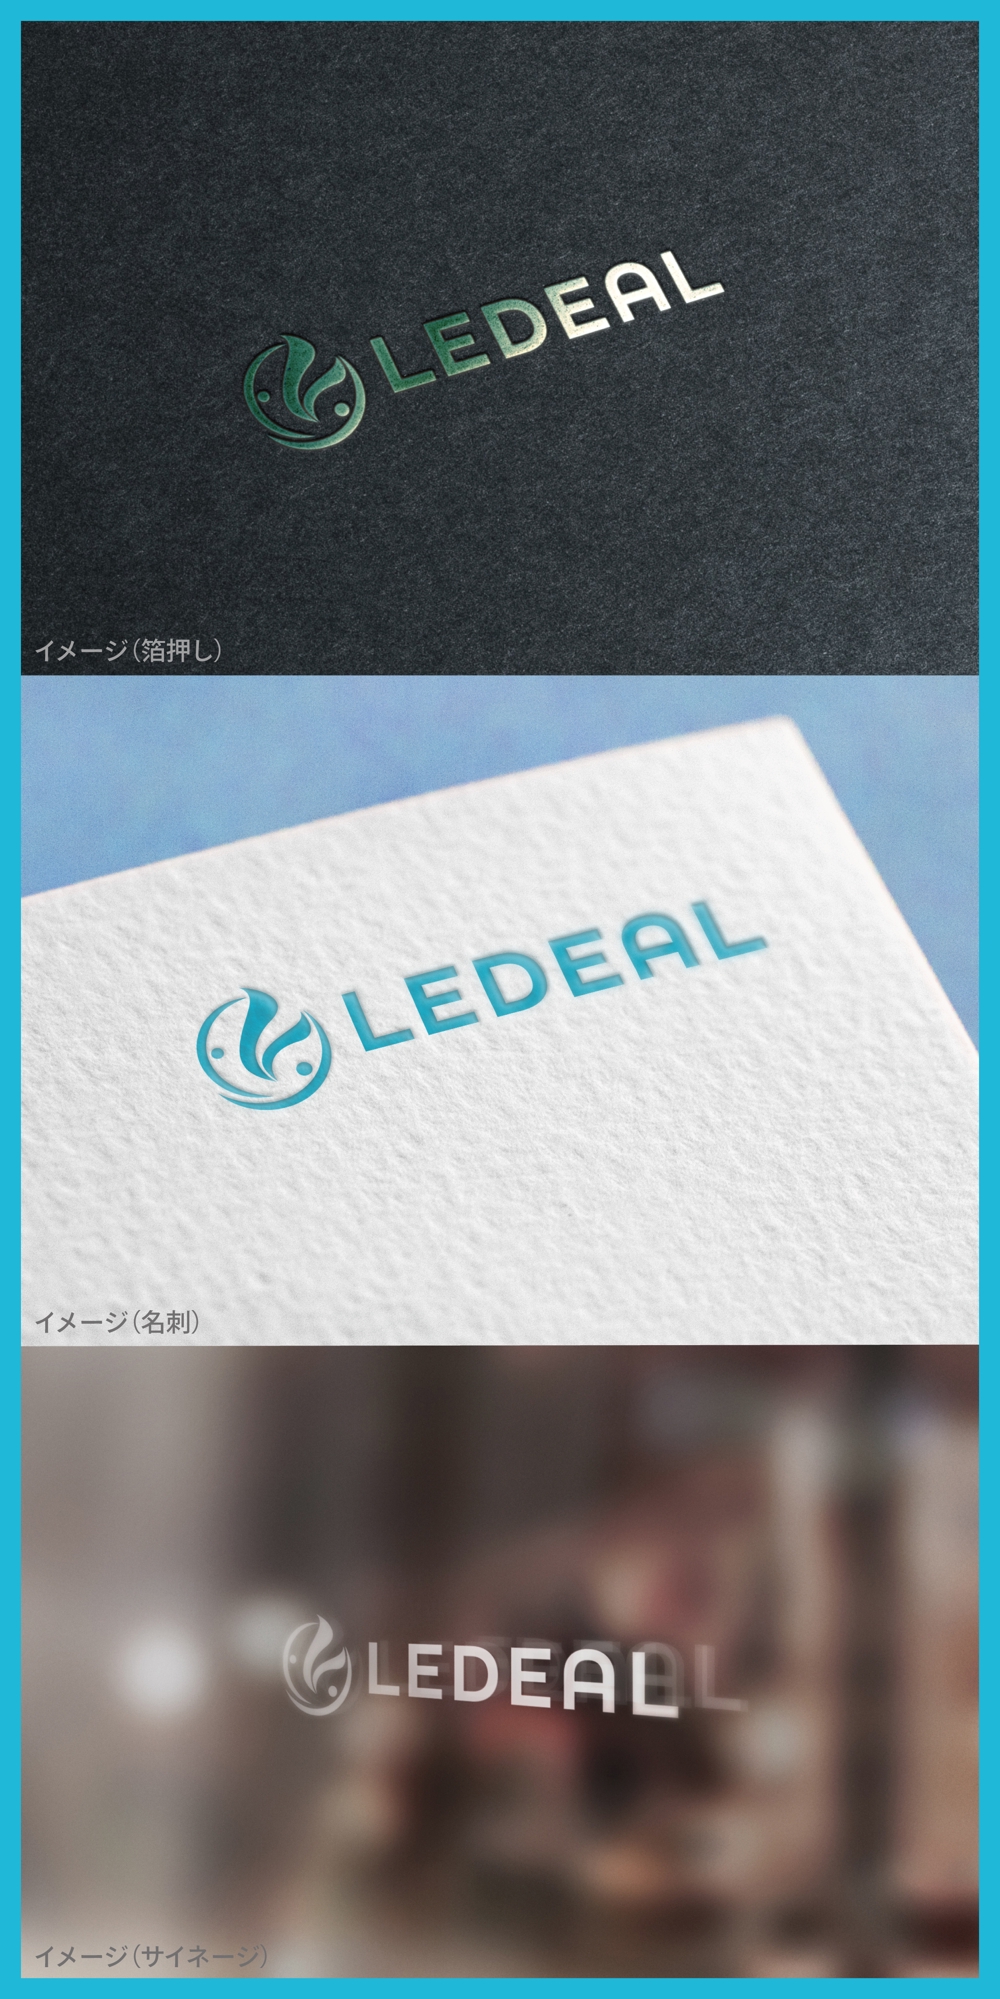 LEDEAL_logo01_01.jpg